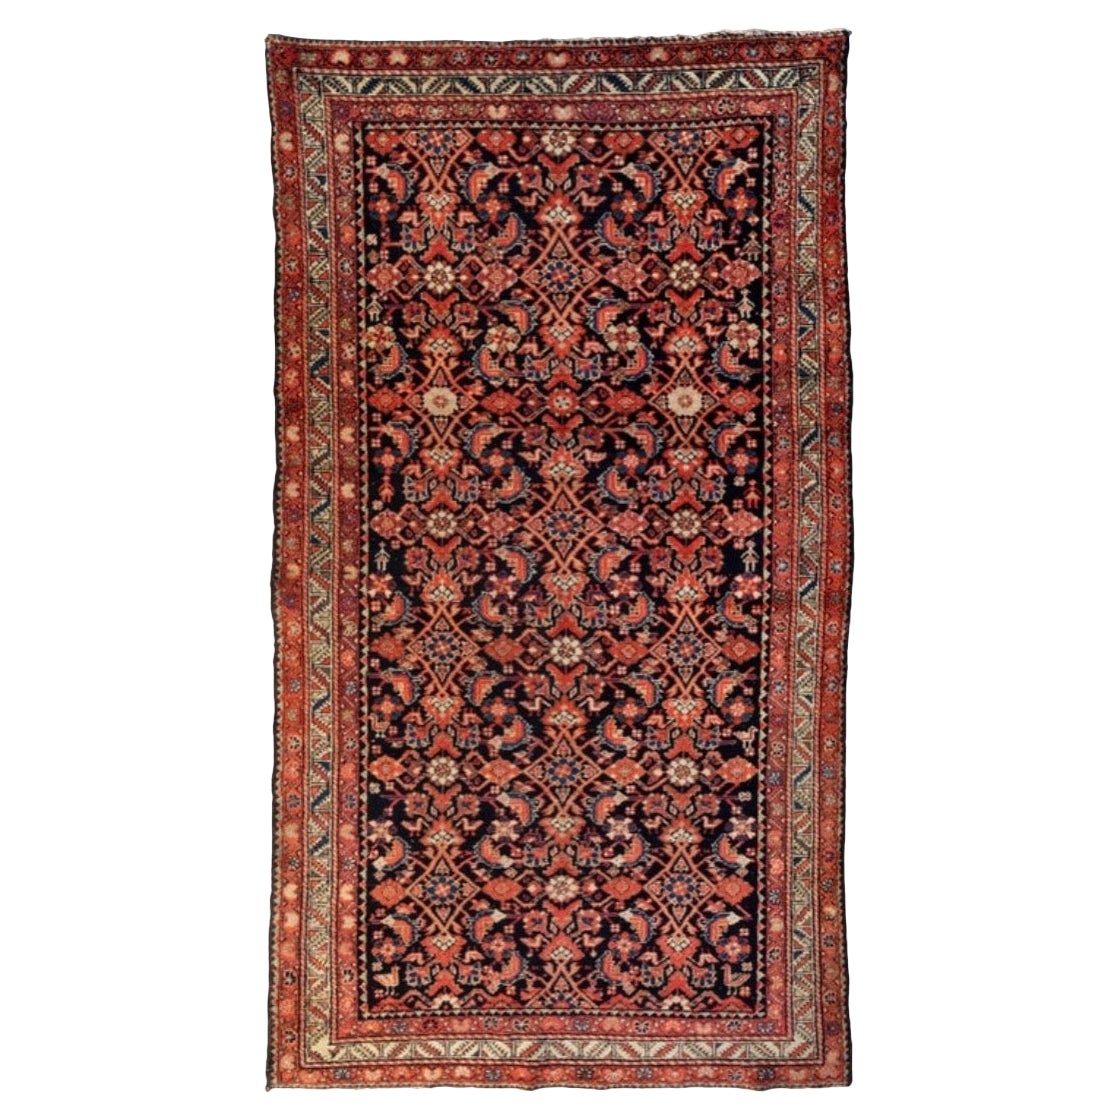 Antiker roter, elfenbeinfarbener, marineblauer, persischer Hamedan-Teppich mit Stammesmotiv, um 1900-1910